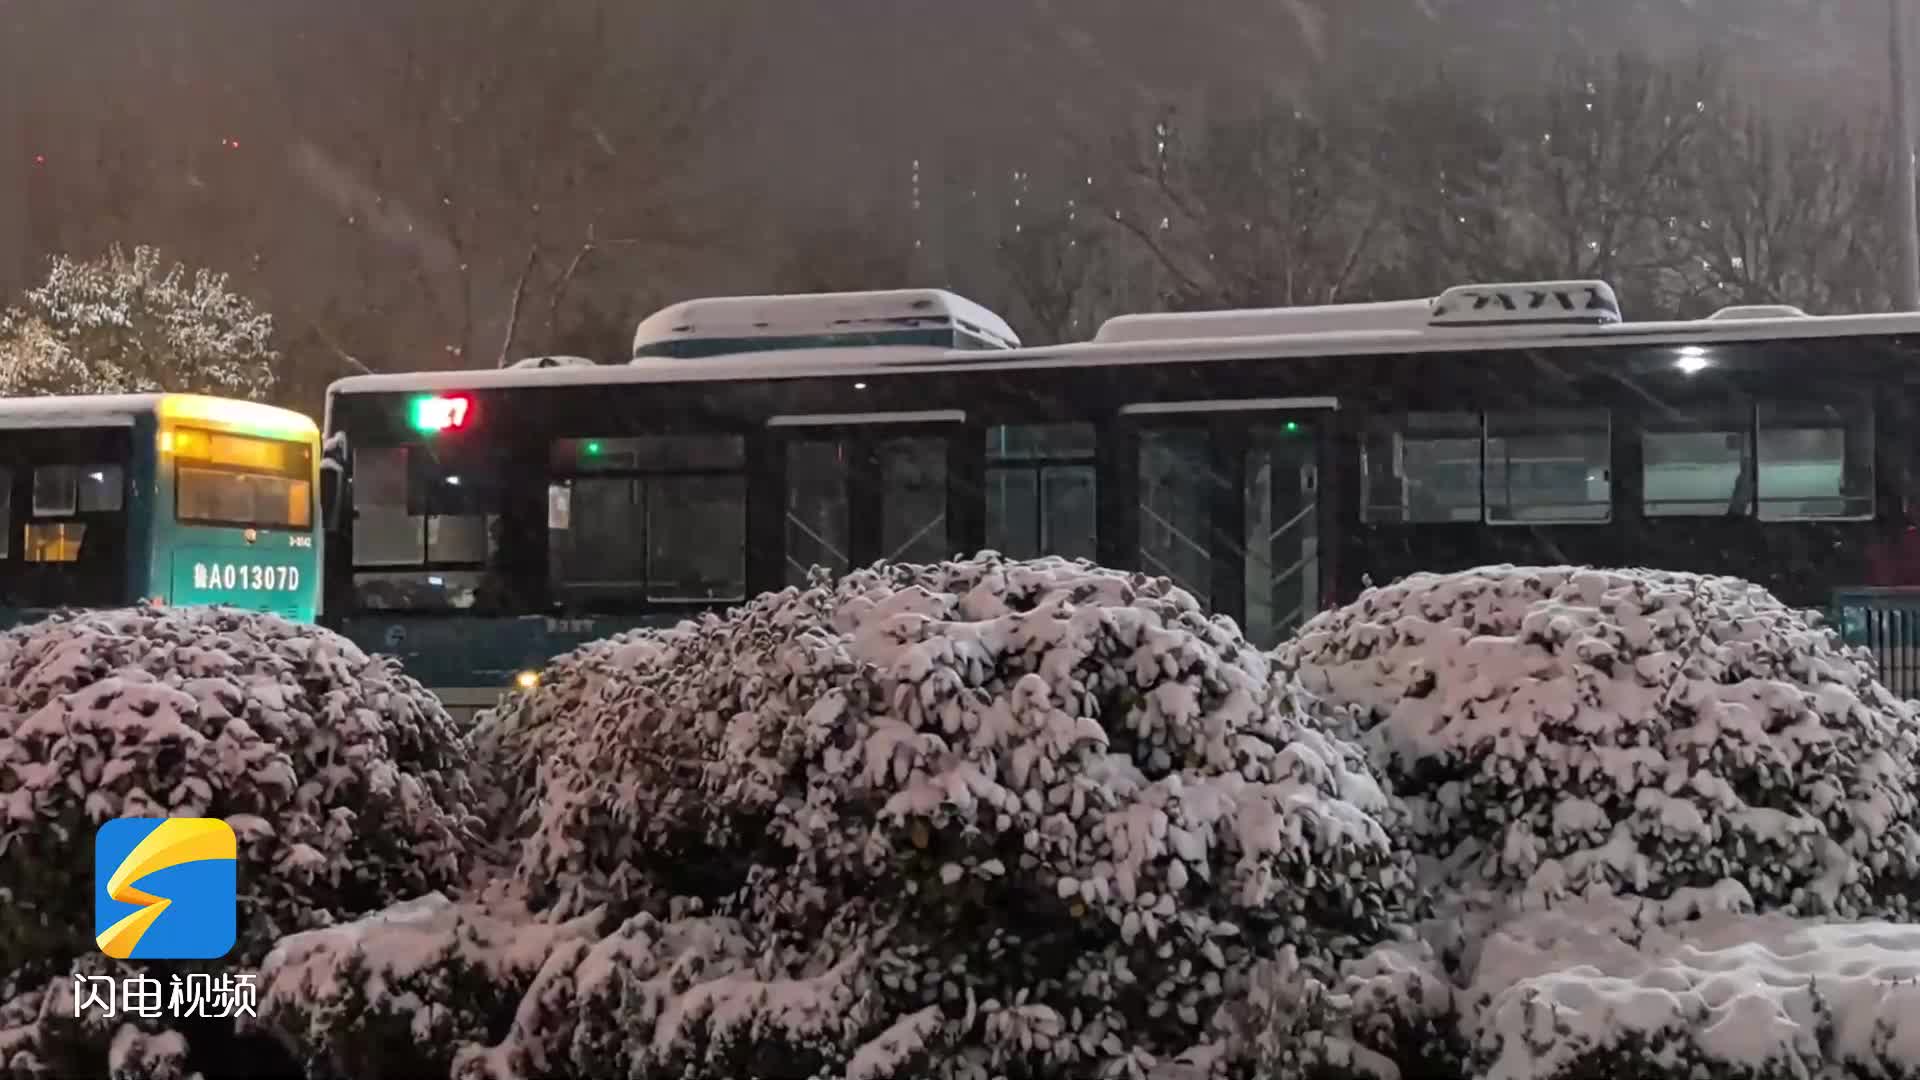 等了一天的雪今晨到了 济南错峰上下班 中小学停课一天